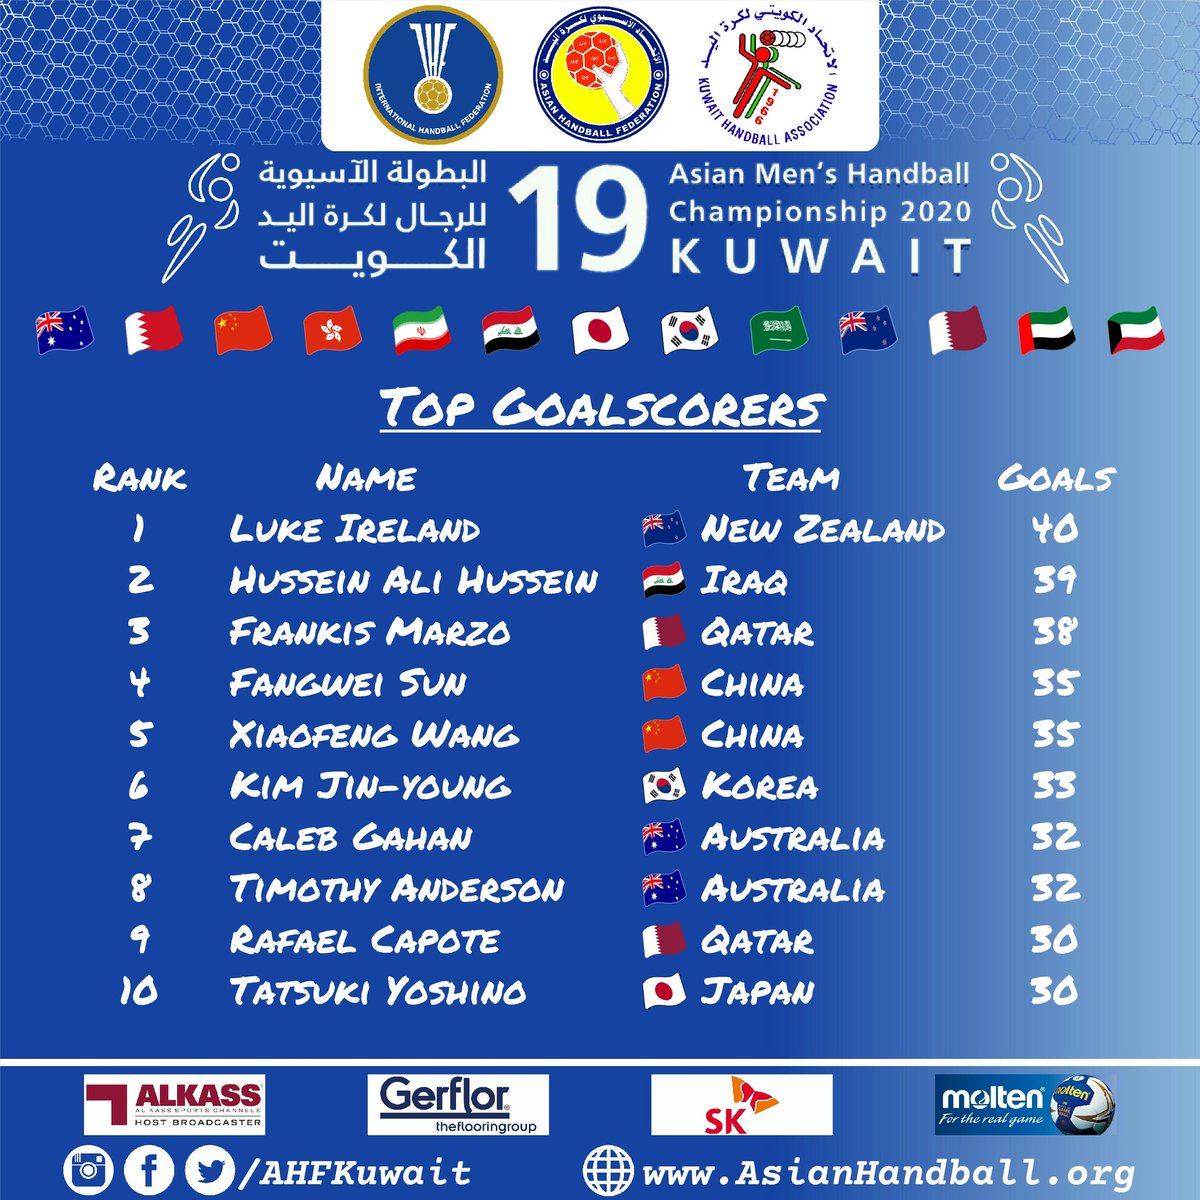 Top Goalscorers | 19th Asian Men's Handball Championship | Kuwait 2020 🇰🇼 #AsianHandball2020 #Kuwait2020 #AHFKuwait